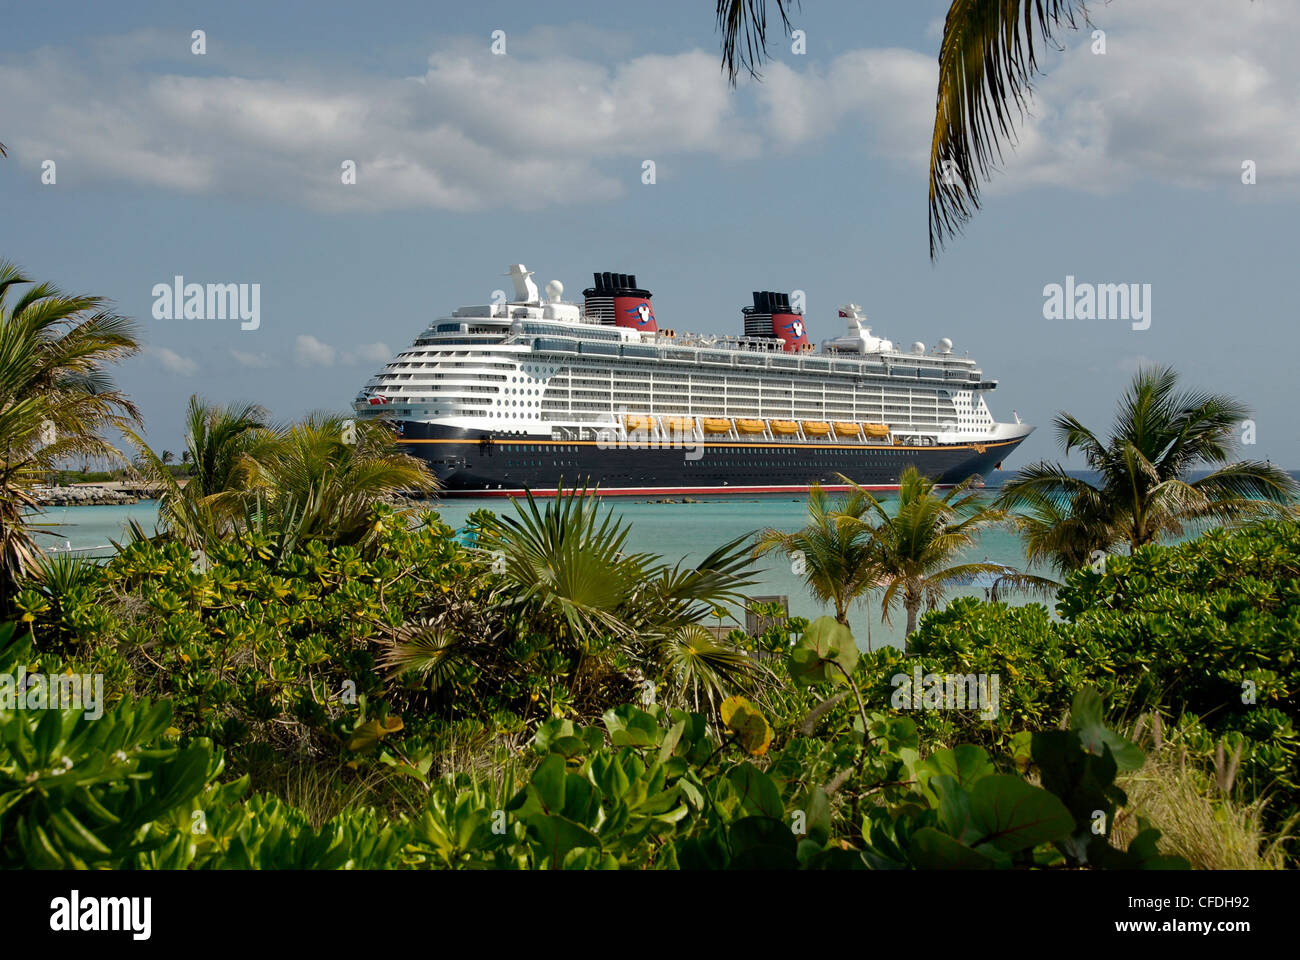 Castaway Cay aux Bahamas sur la ligne de croisière de Disney's Disney Dream Cruise Ship Banque D'Images